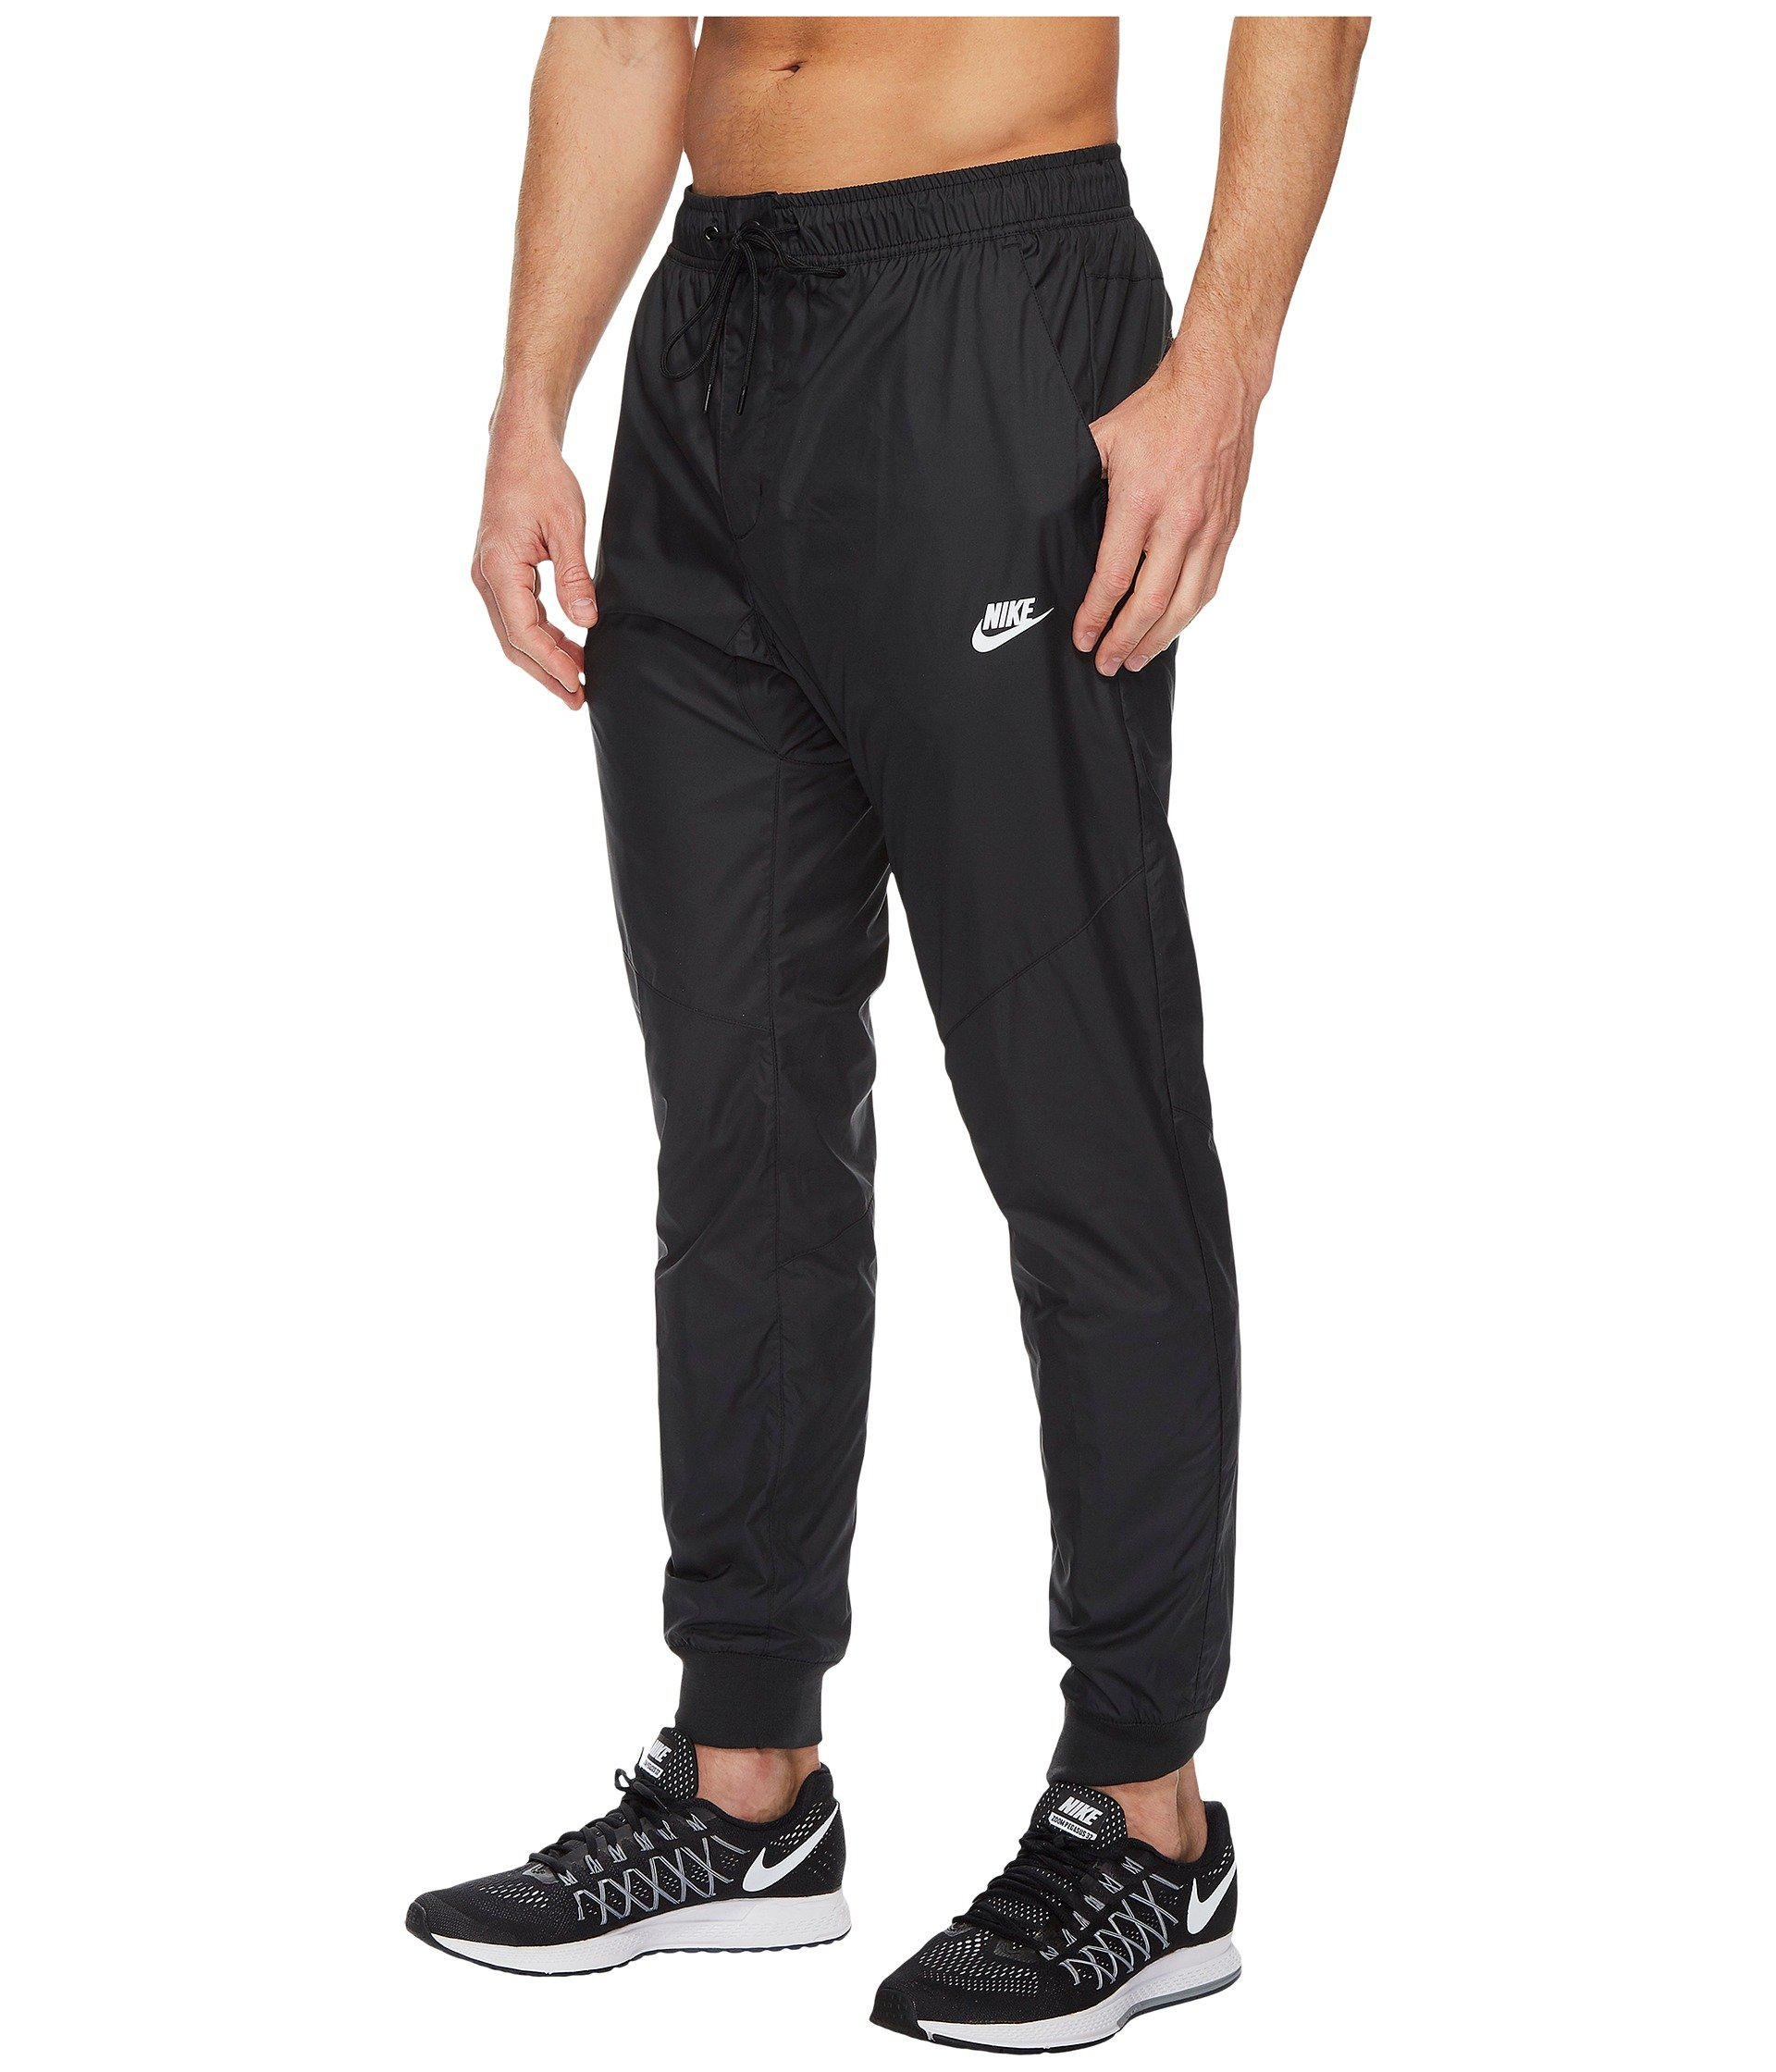 Nike Synthetic Sportswear Windrunner Pant in Black/Black/Black/White  (Black) for Men - Lyst